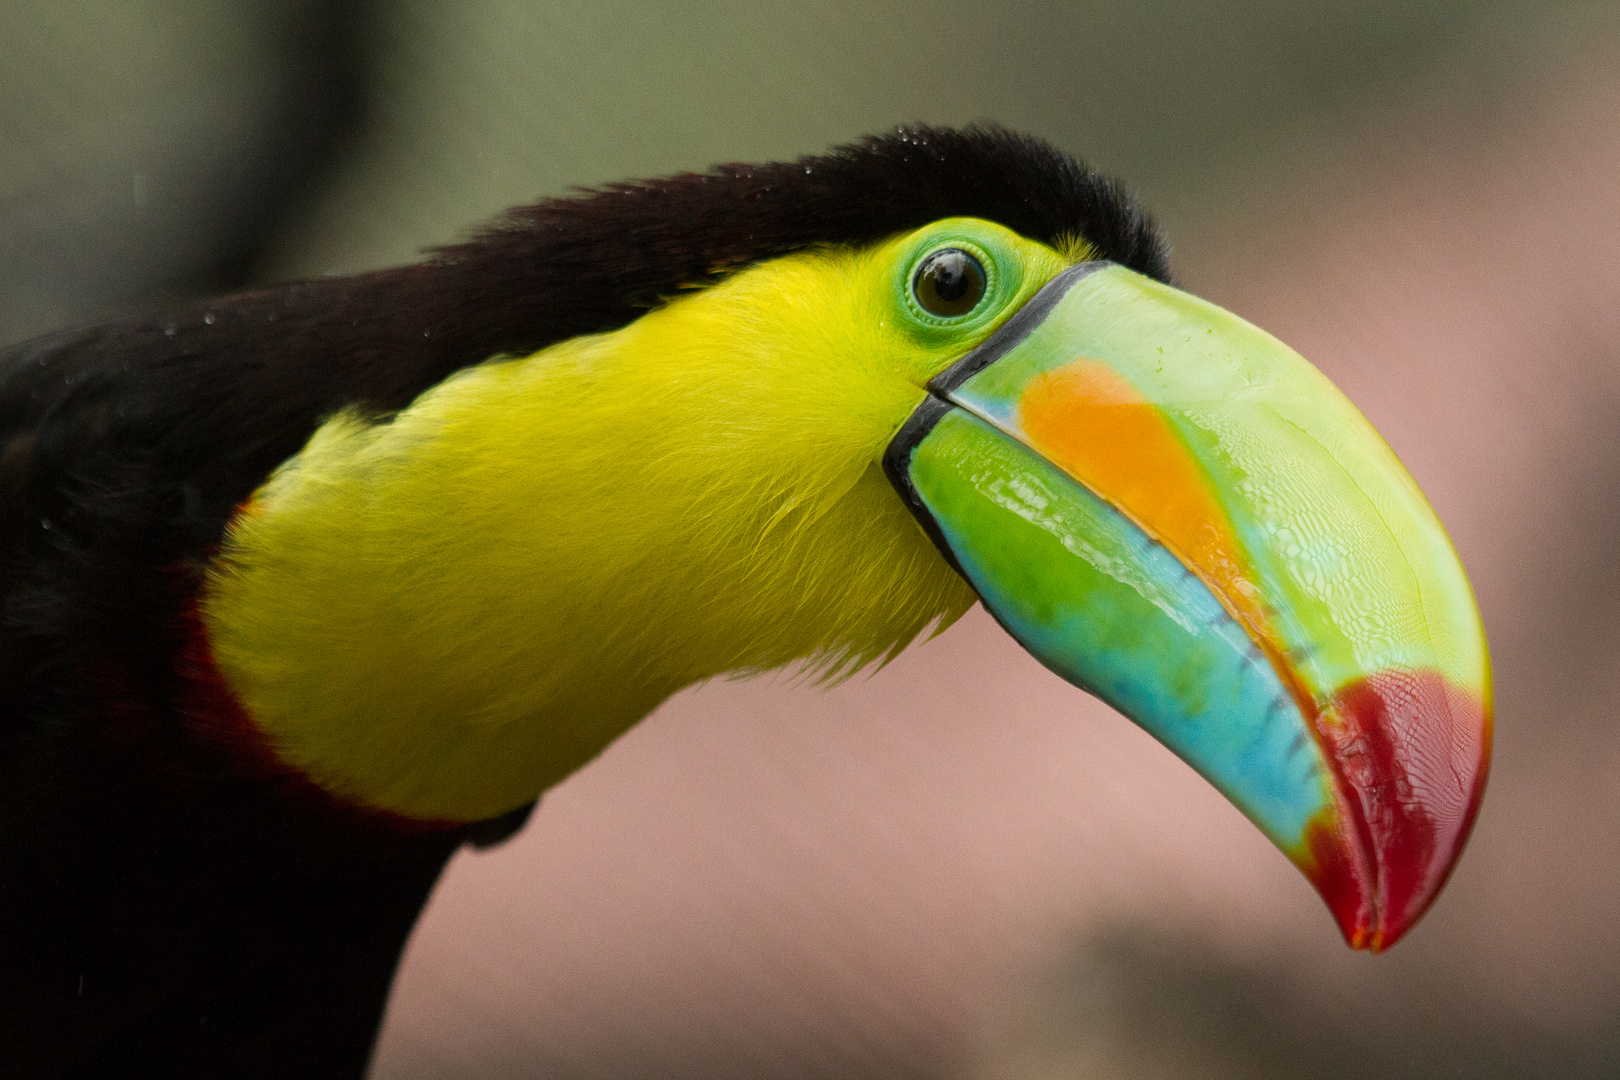 Regenbogen-Tucan in Costa Rica